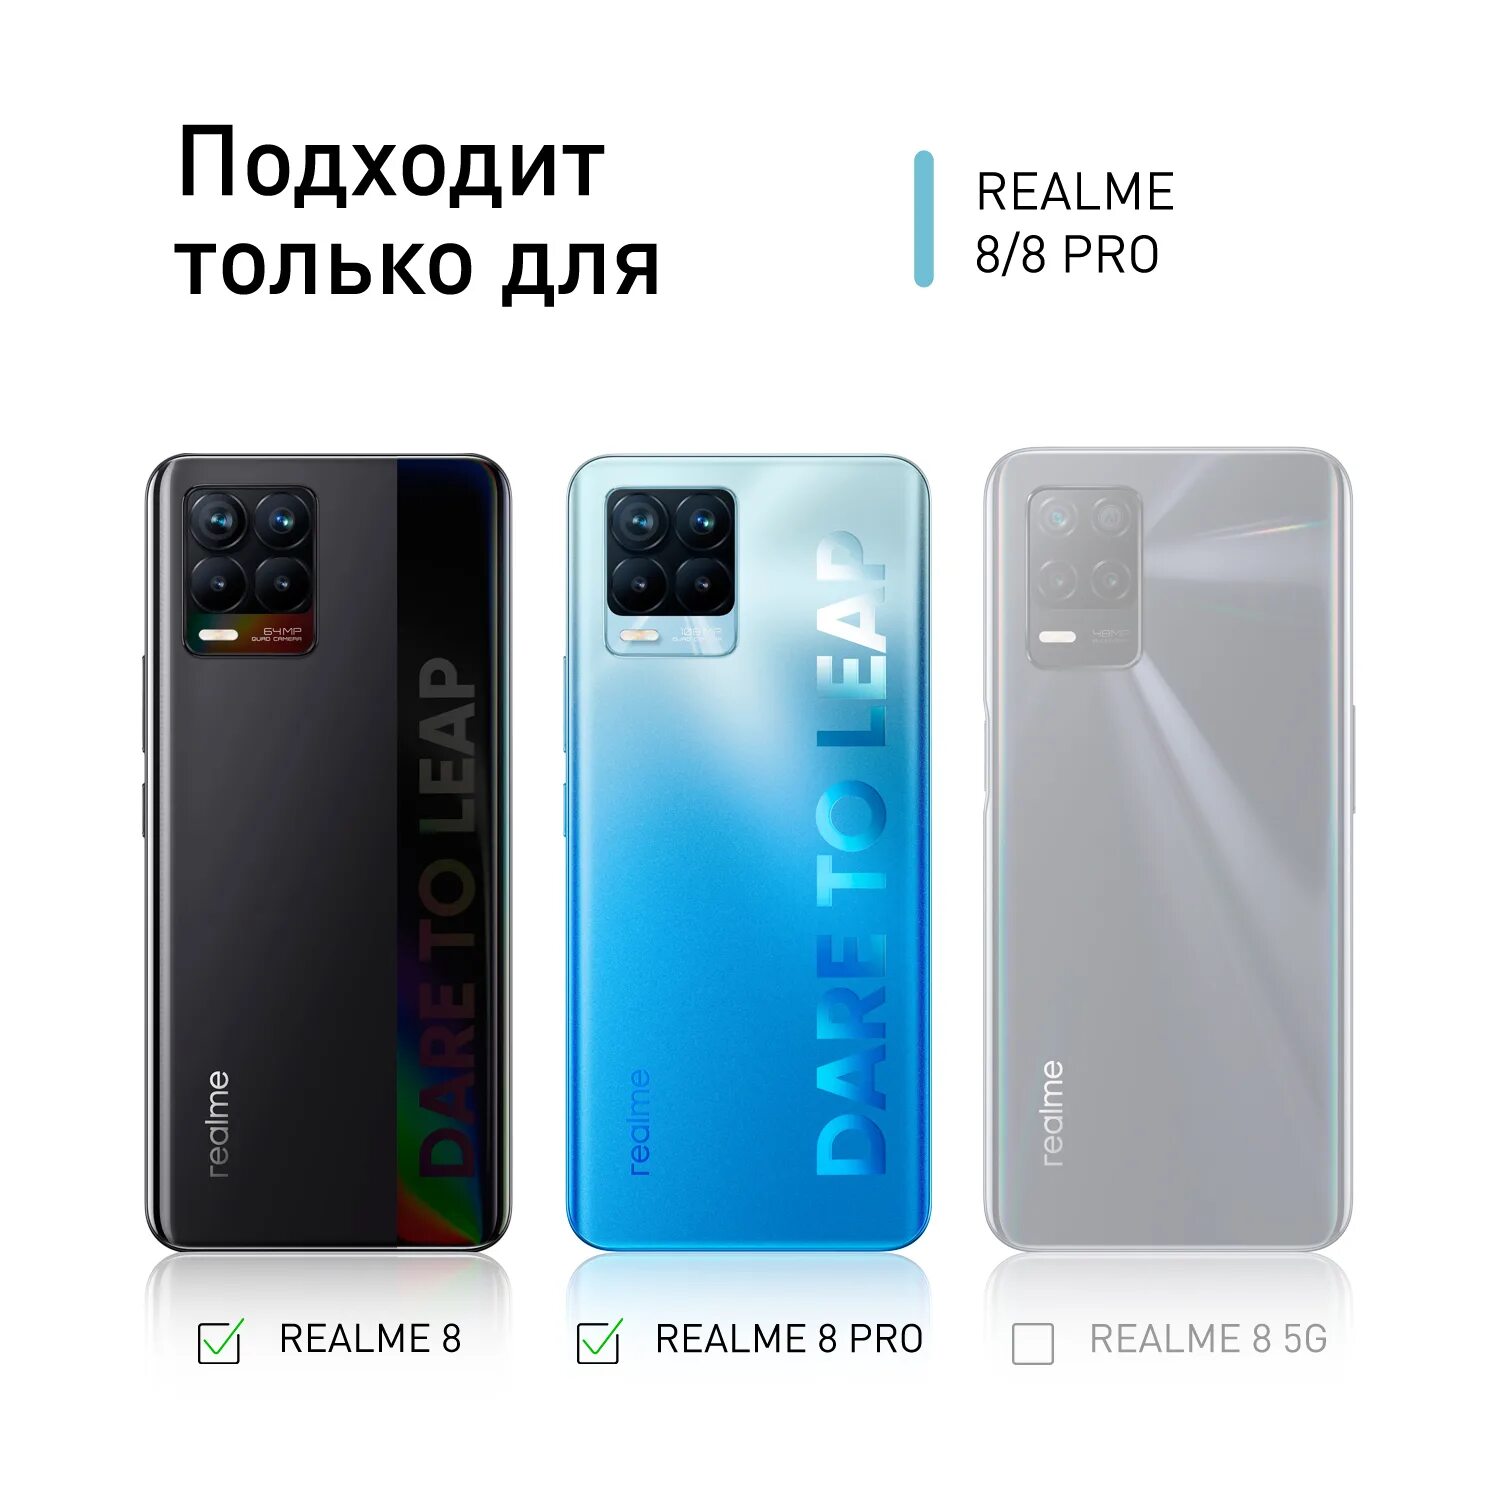 Realme 8 Pro чехол. РЕАЛМИ 8. Realme 8 Pro запчасти. Realme 8 Pro цвета. Реалми 11 про версии